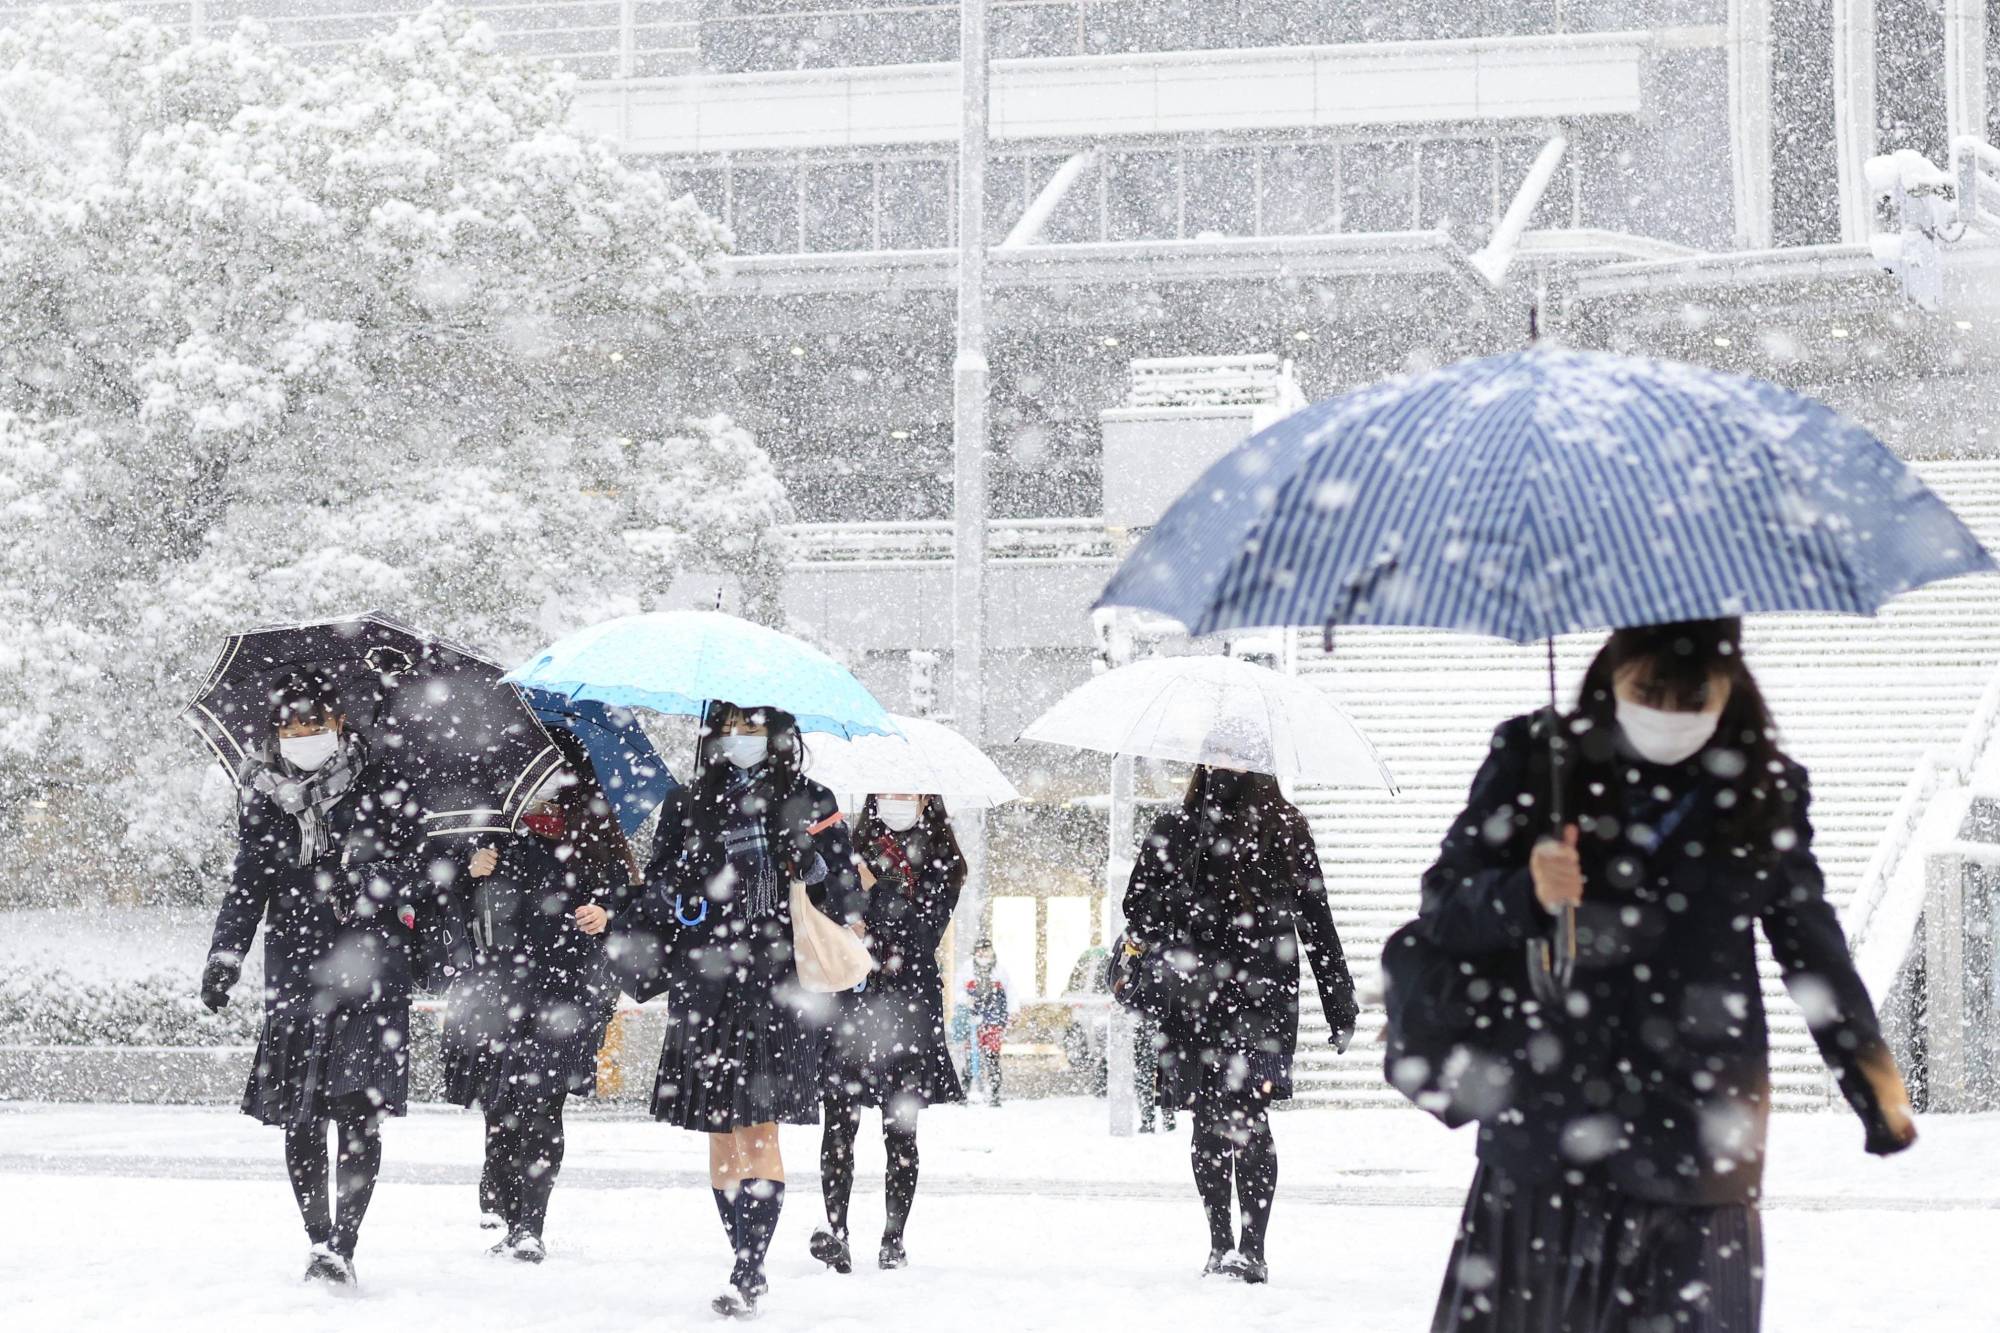 Konya'da okullar tatil mi? 10 Şubat Perşembe Konya'da okullar kar tatili mi olacak? Hangi ilçelerde okullar tatil?